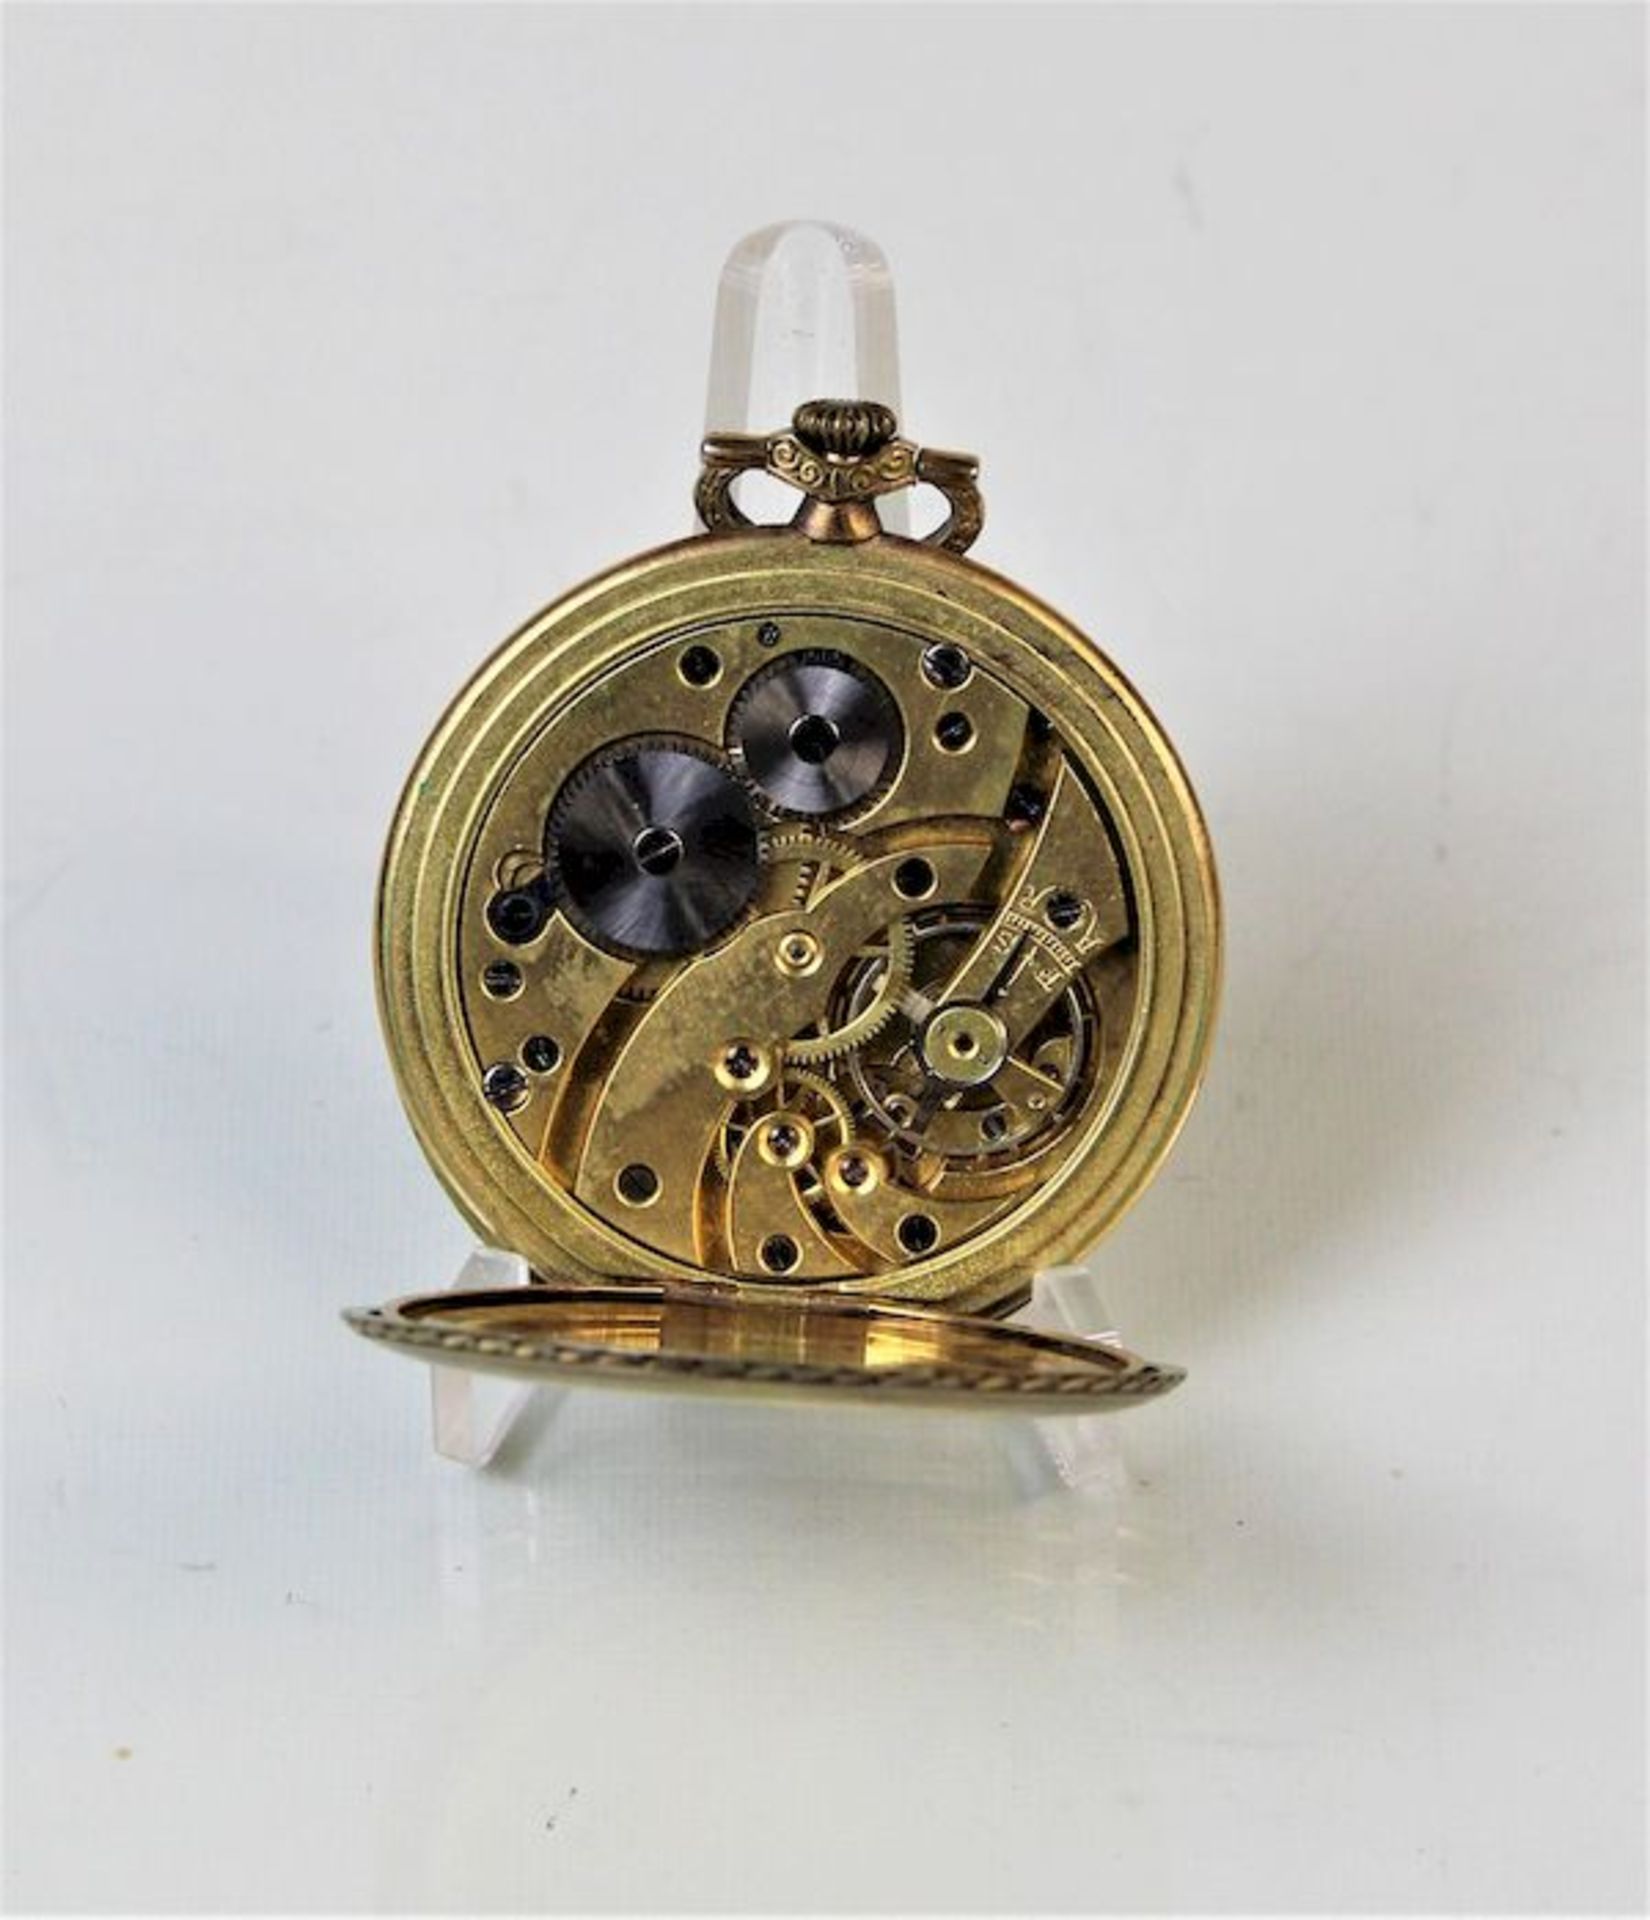 Taschenuhr " B. E Watch Tavannes ", vergoldetSekunde bei 6 Werknummer 520583 Maße: ca. D. 50 mm - Bild 3 aus 3